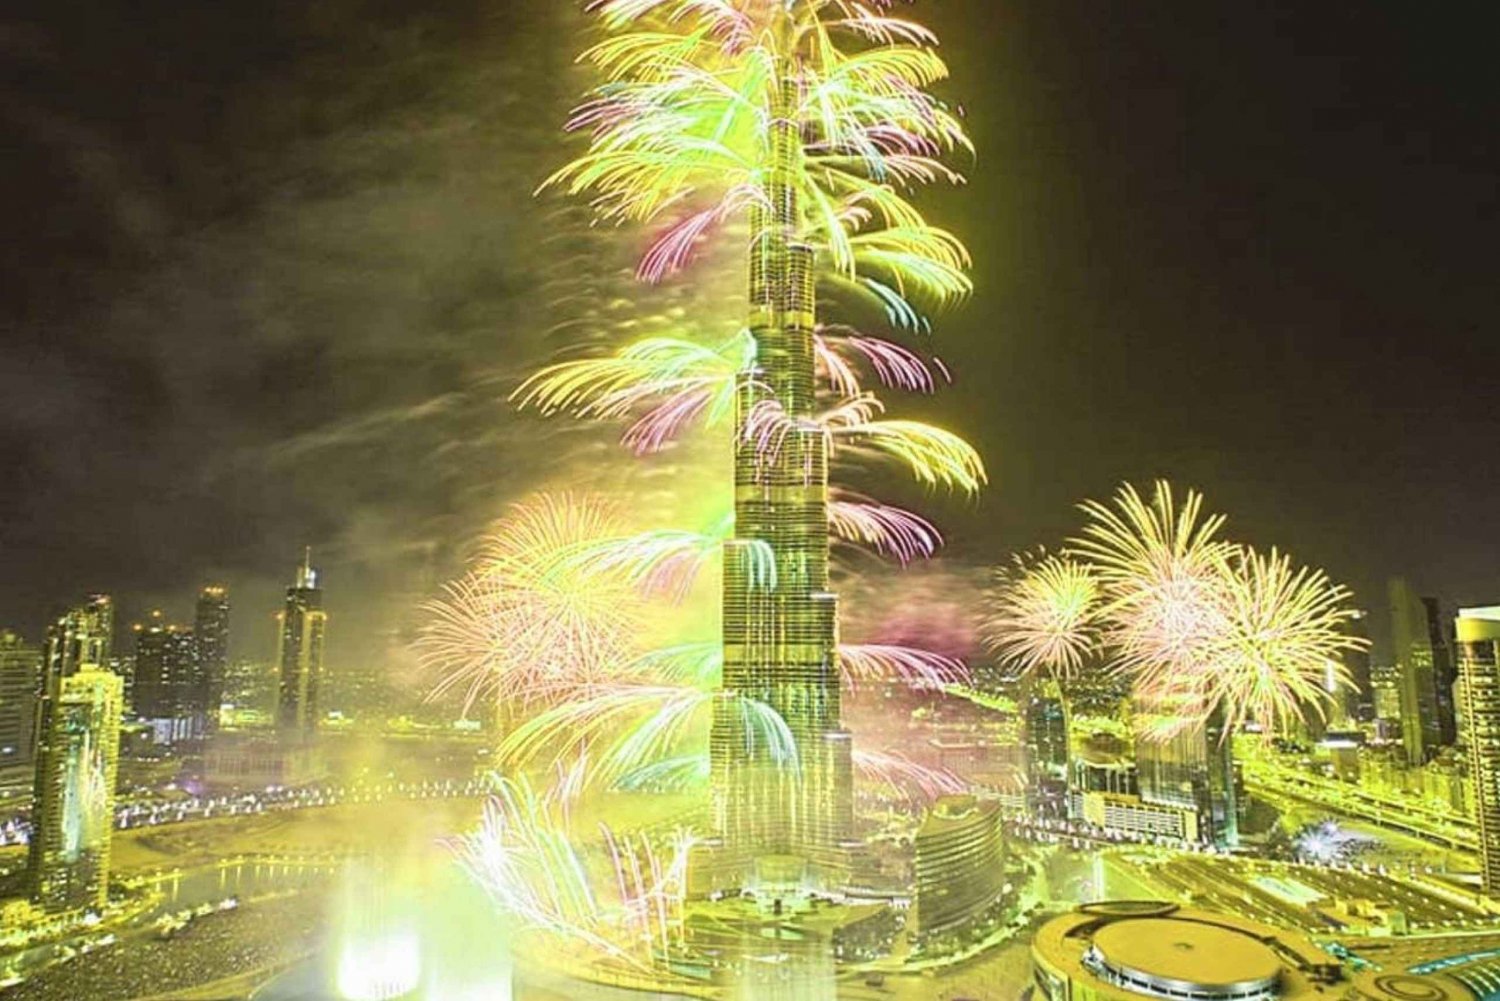 Dubai: Silvester-Kreuzfahrt mit Feuerwerk und Buffet-Dinner